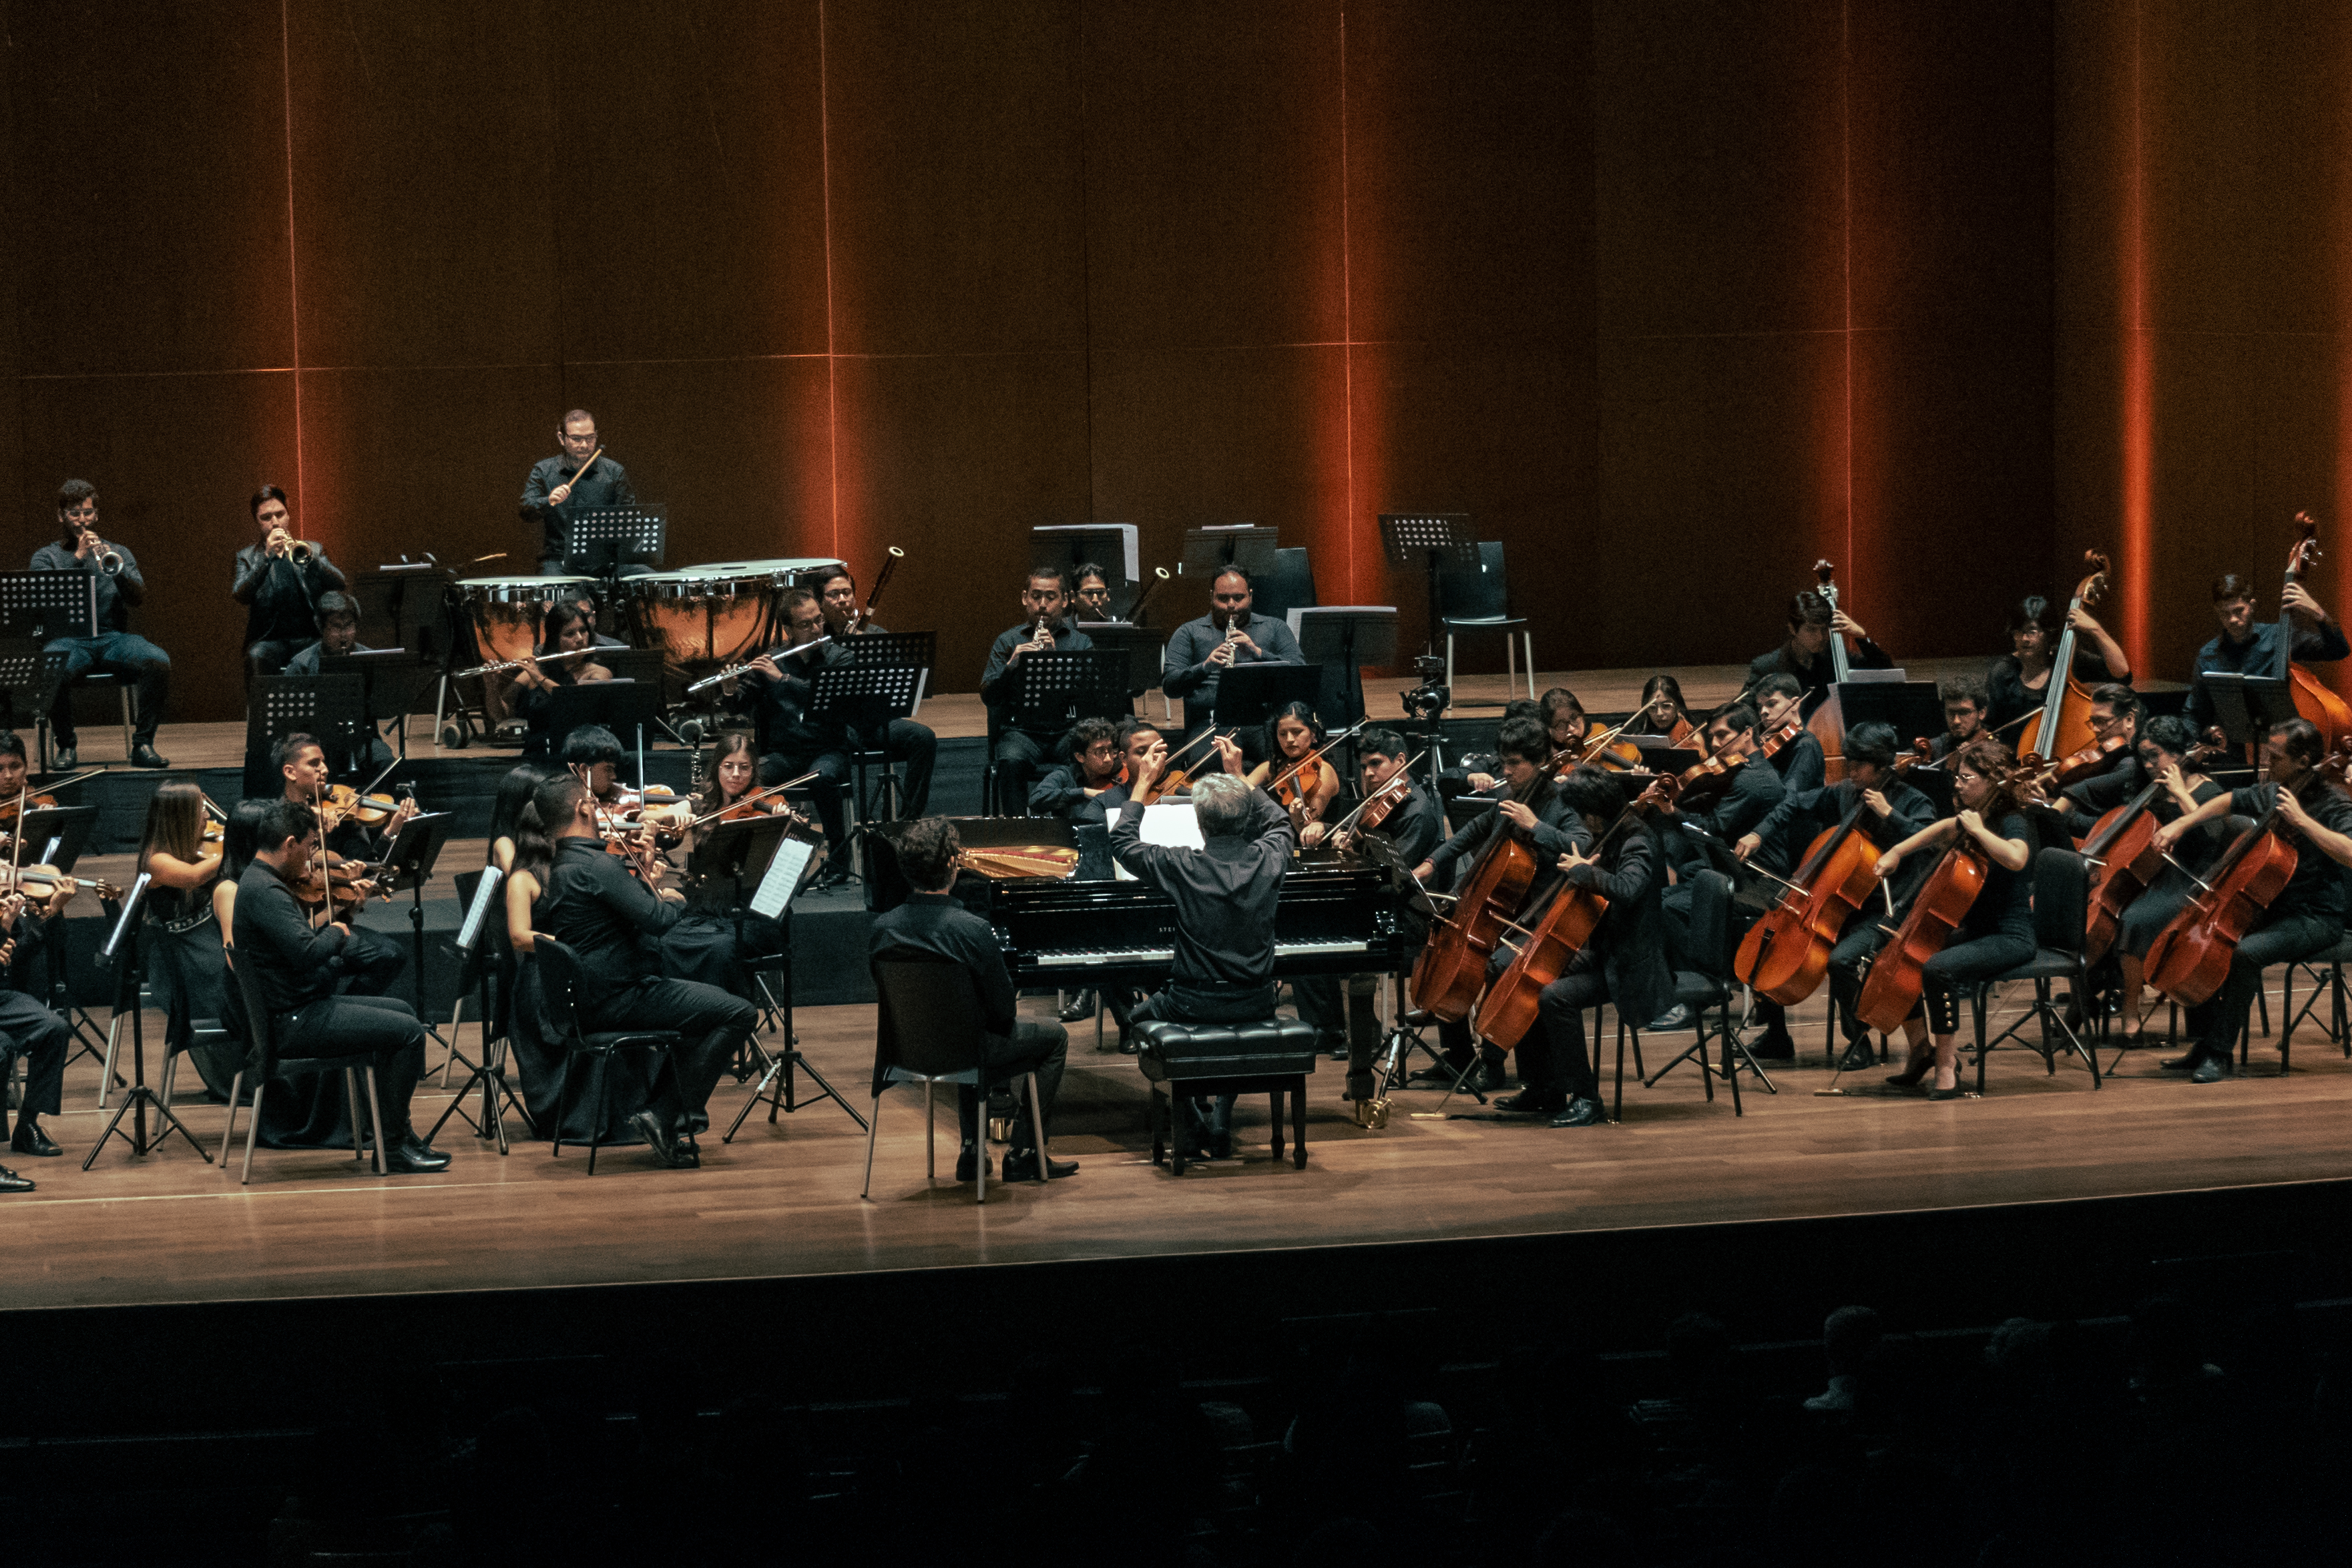 La Orquesta Sinfónica Nacional Juvenil Bicentenario inaugura su Ciclo de Conciertos de Cámara con la presentación  Cuerdas y Vientos de Cámara